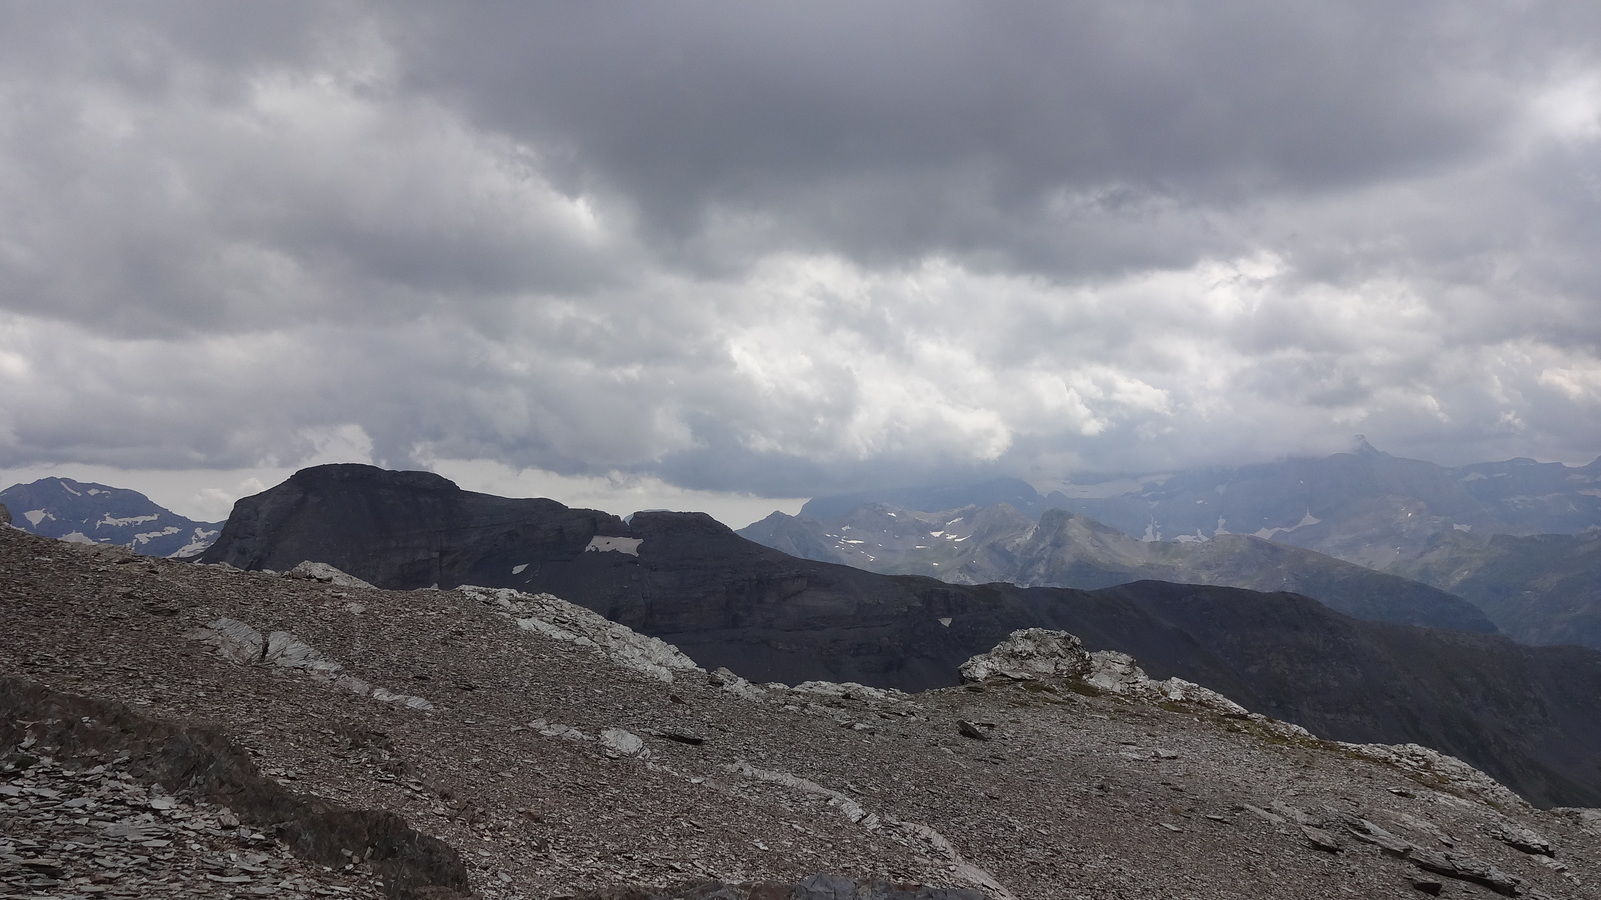 Vue sur la crête des Pyrénées, dans les nuages